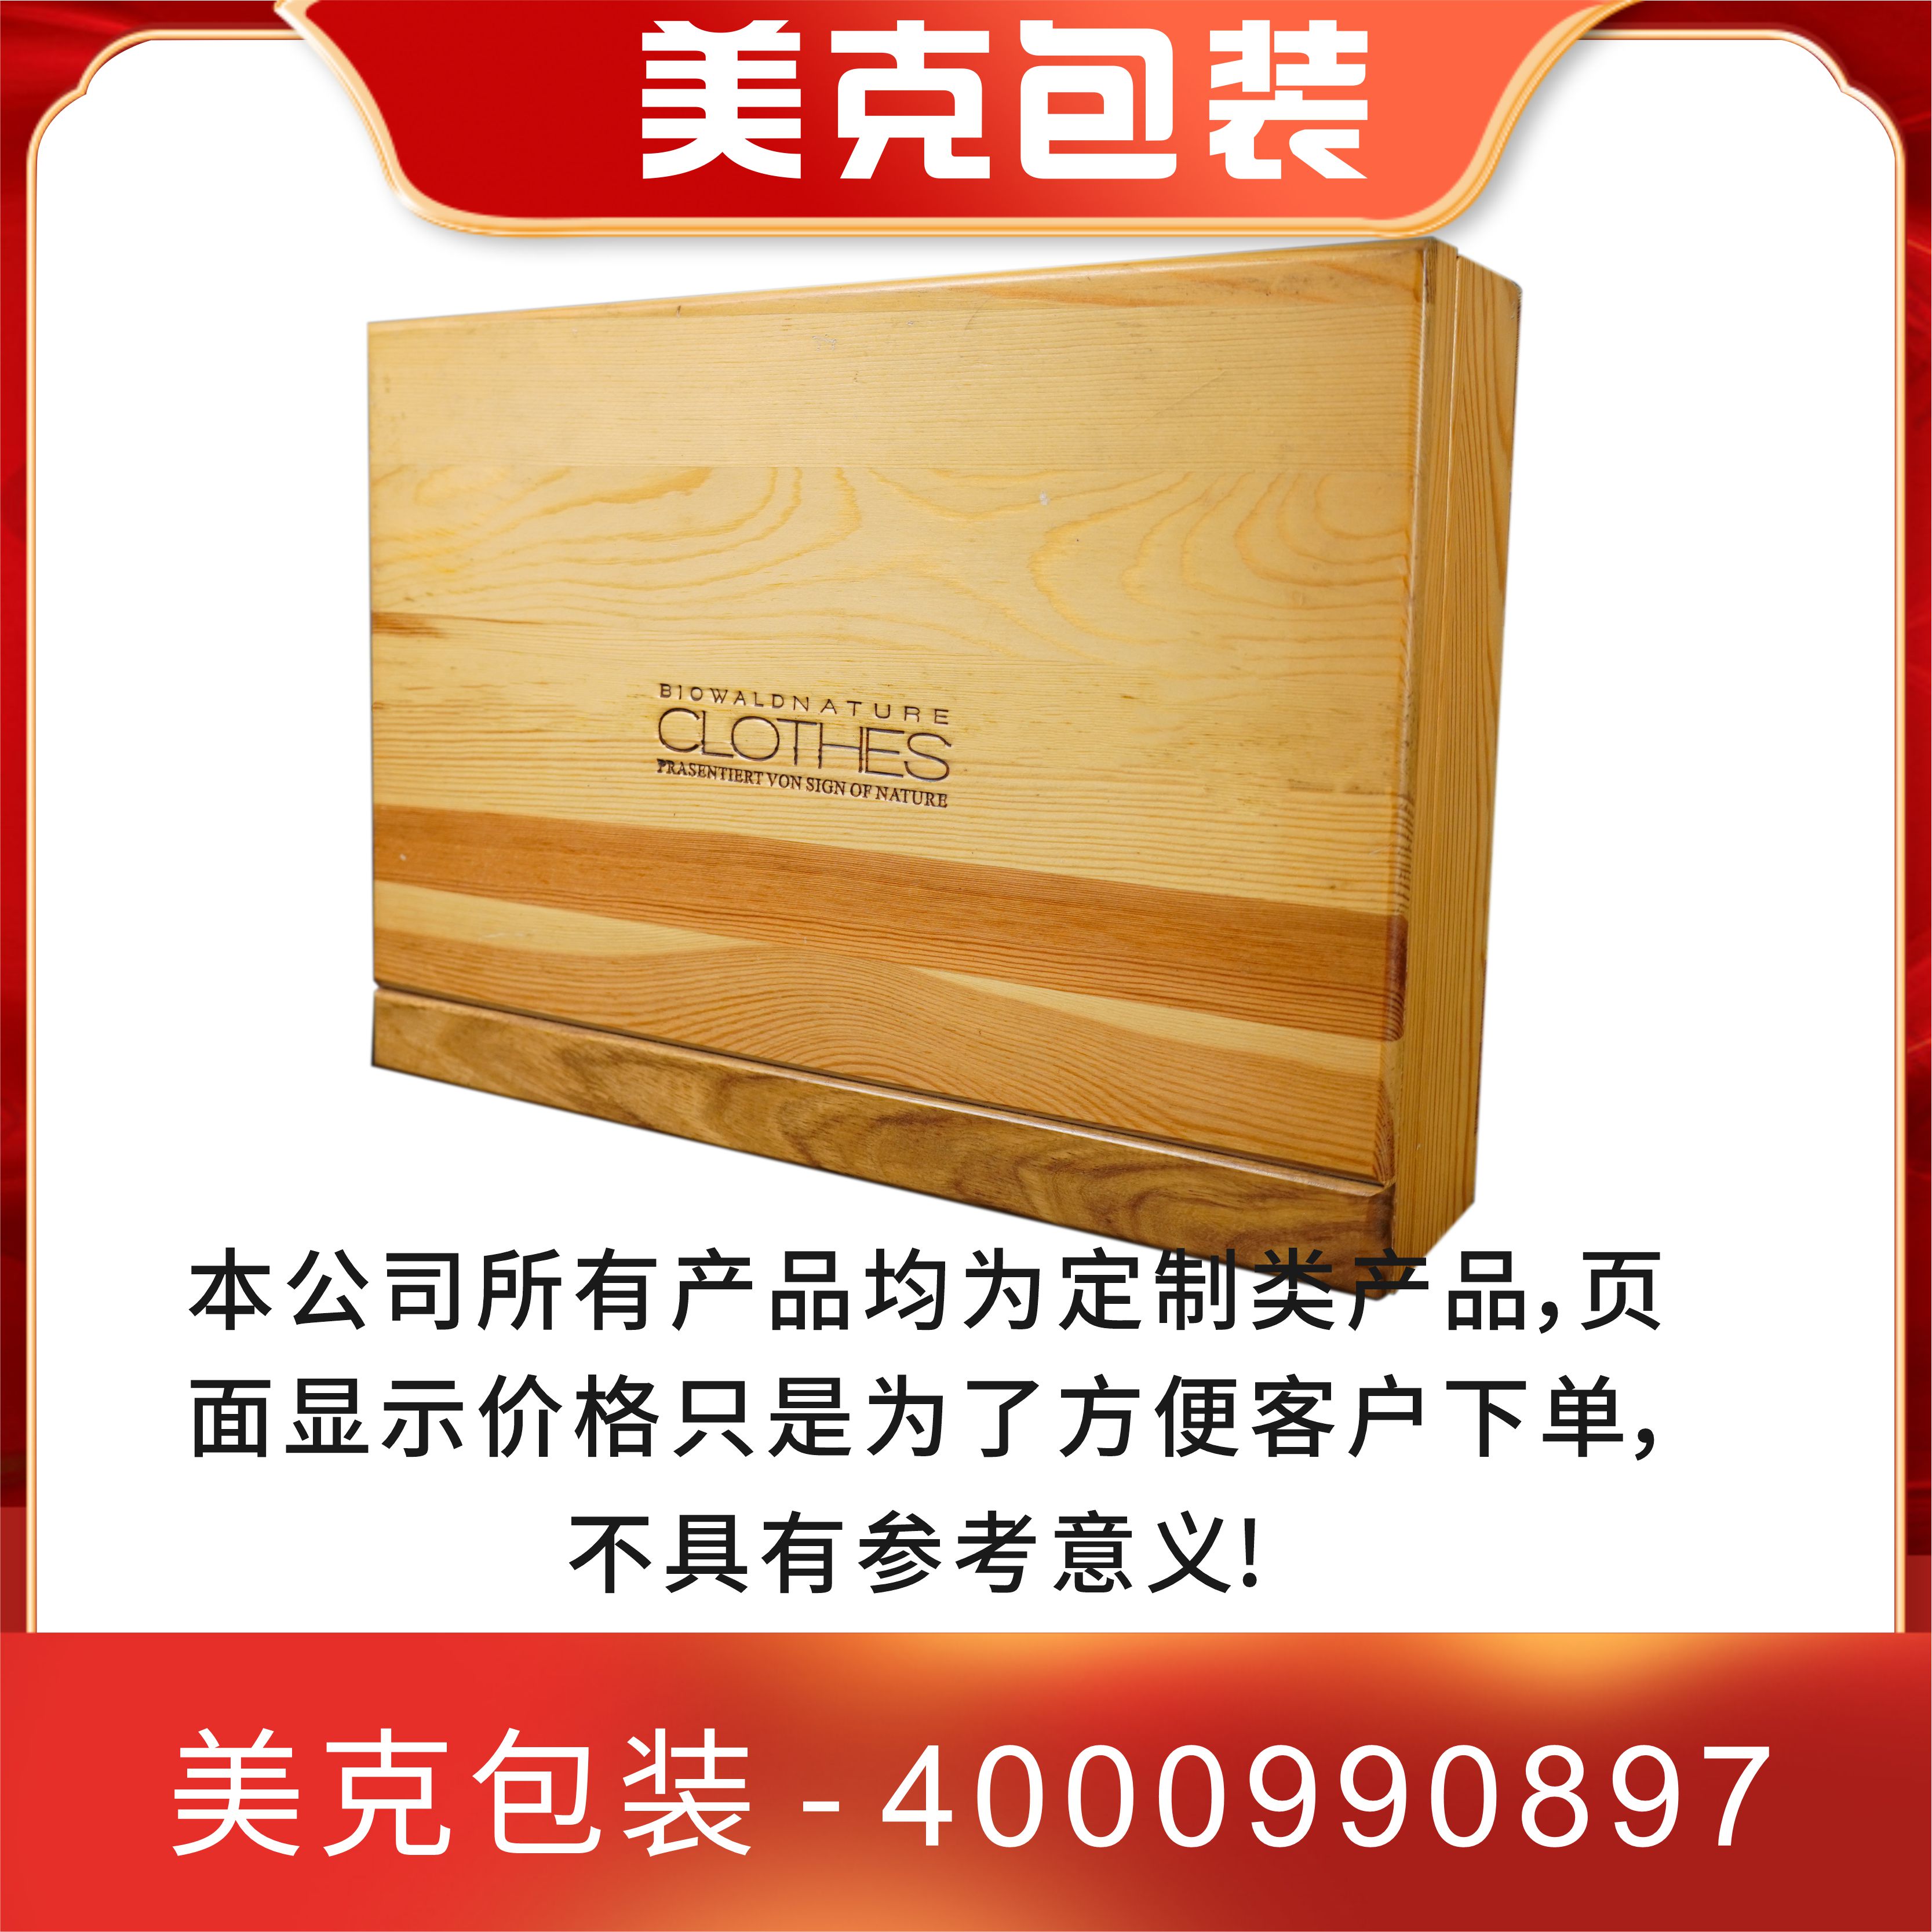 木质礼盒包装木质礼盒包装